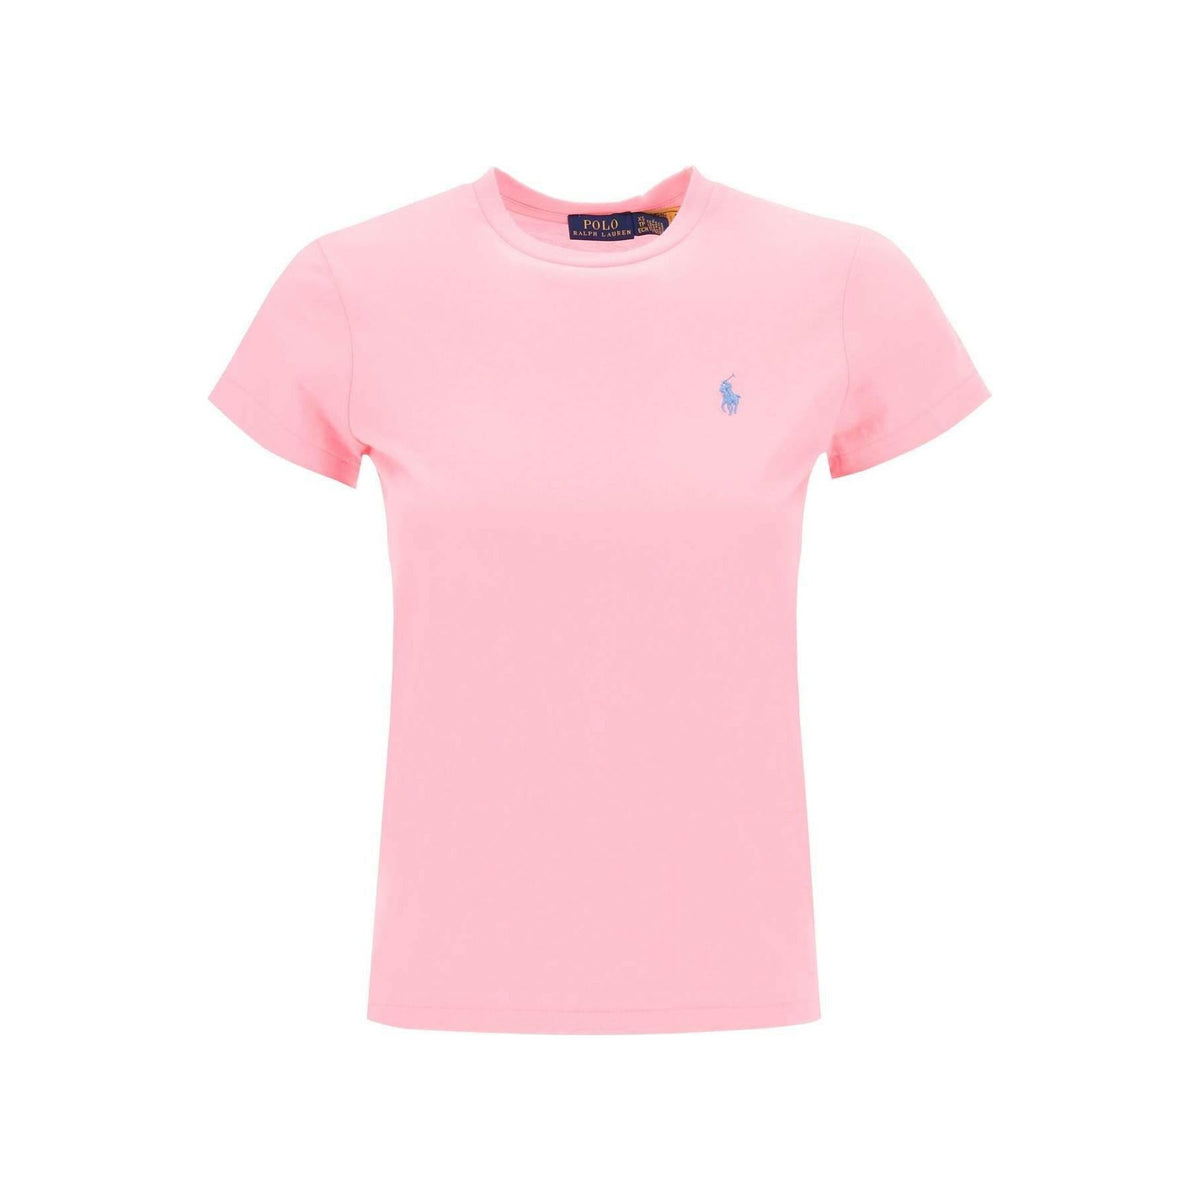 POLO RALPH LAUREN - Course Pink Cotton Jersey T-Shirt - JOHN JULIA